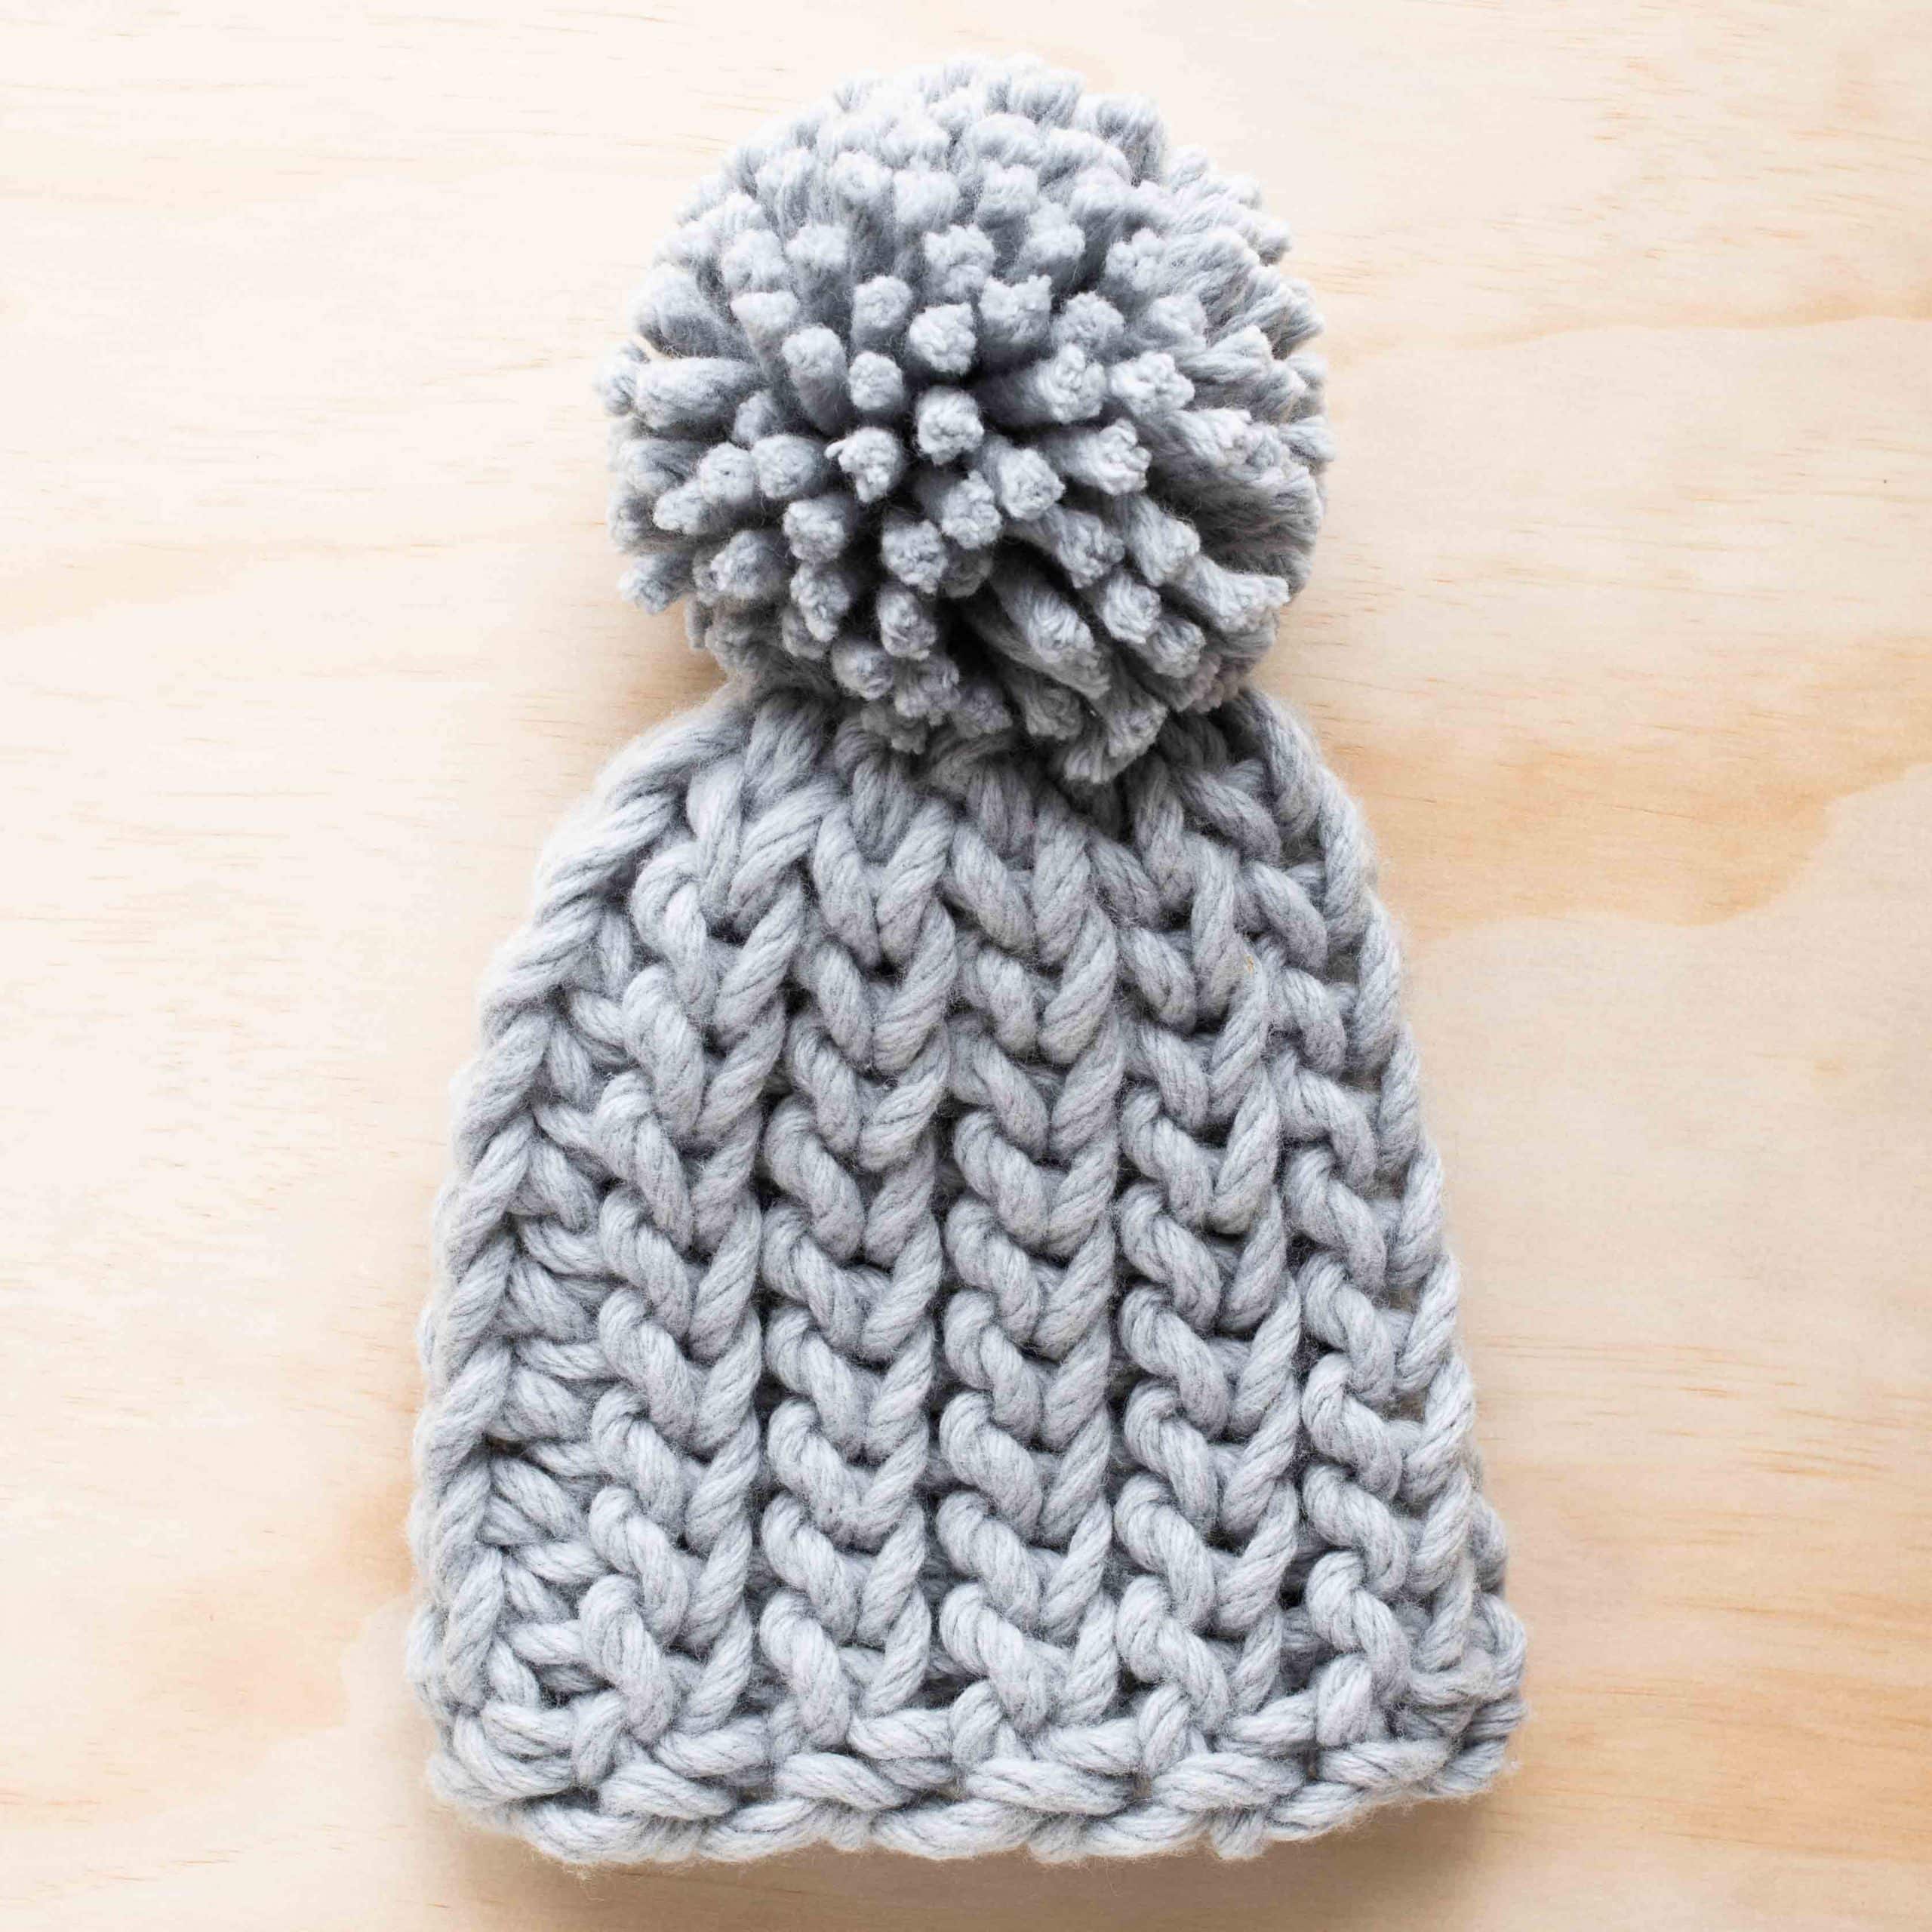 Child's Bonnets Handmade Crochet Mustard Teal Plum Grey.